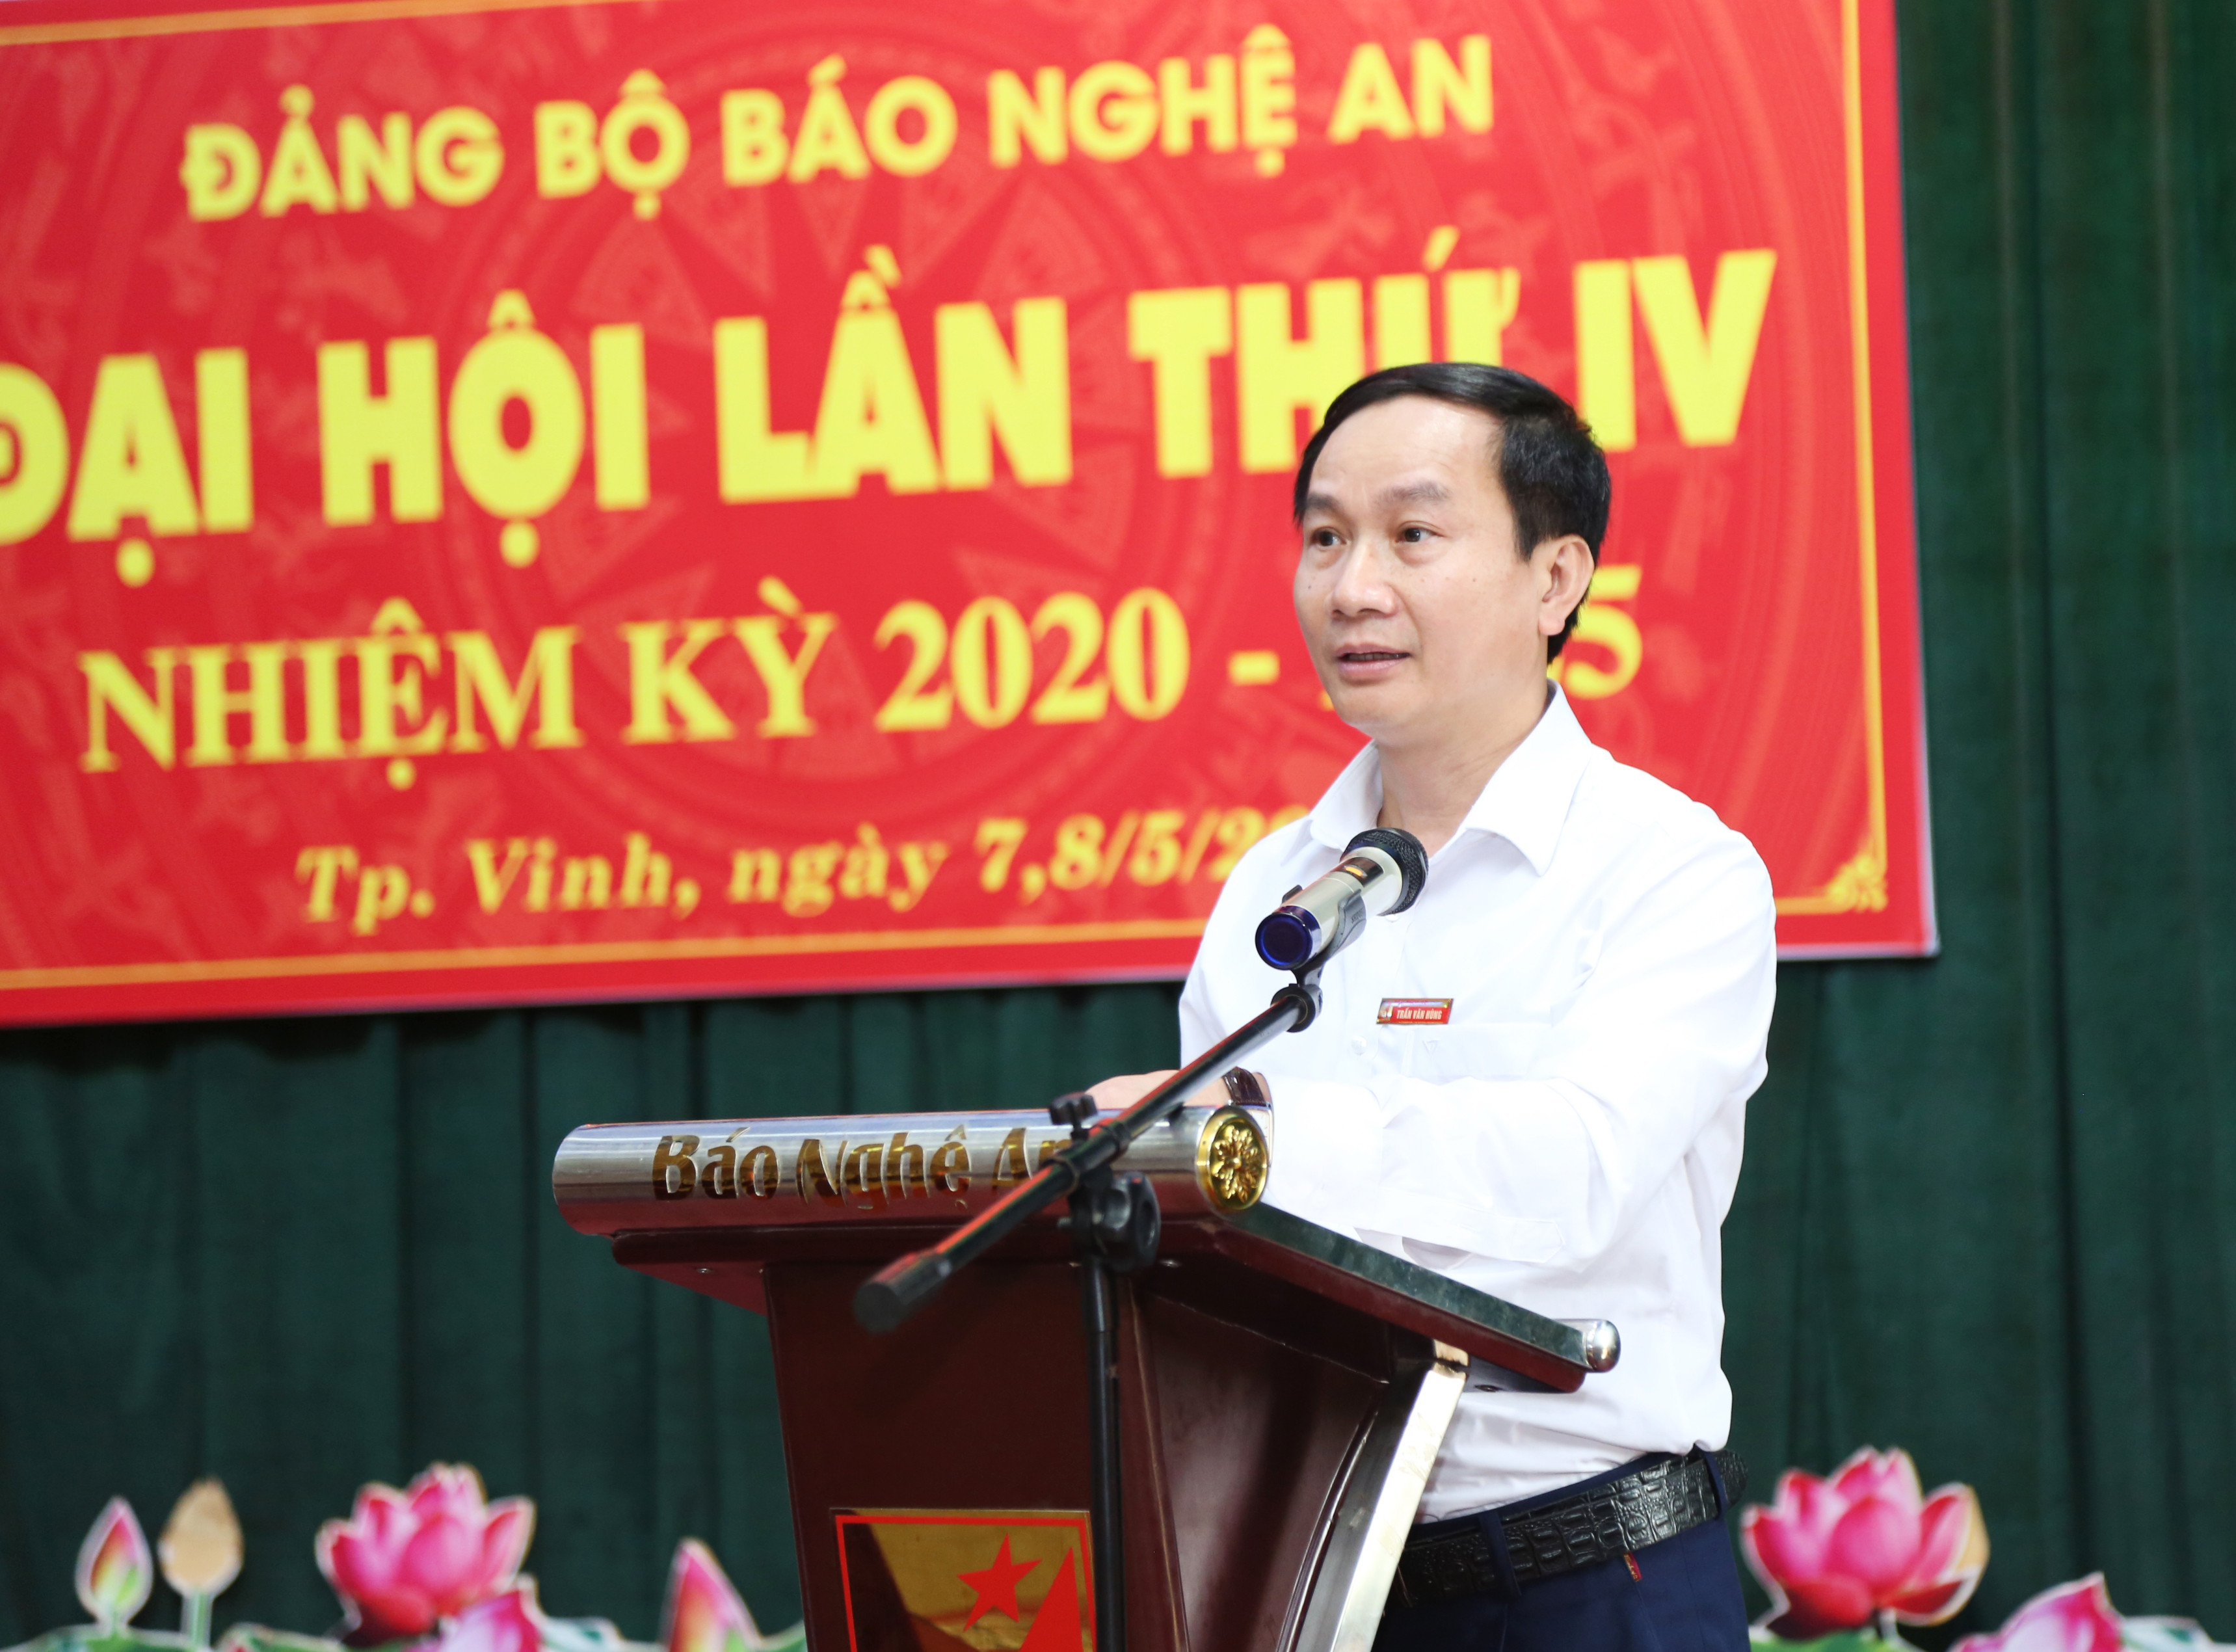 Đồng chí Trần Văn Hùng - Phó Bí thư Đảng ủy, Phó Tổng Biên tập trình bày báo cáo chính trị tại đội hội. Ảnh: Thanh Lê